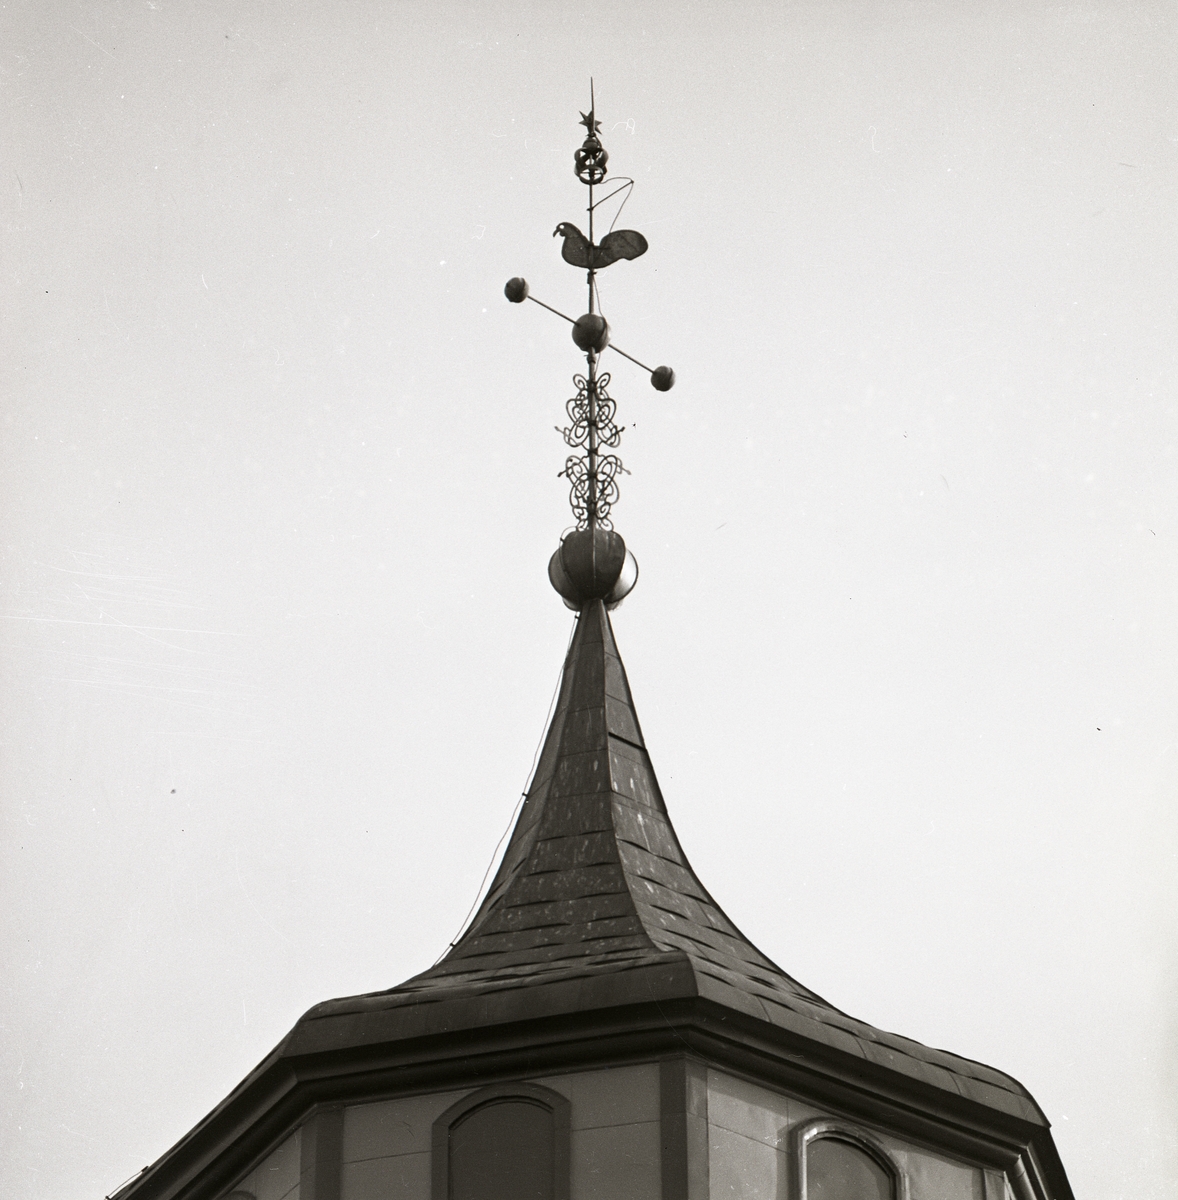 Torn med spira med kyrktupp på taket till Ulrika Eleonora kyrka i Söderhamn, 1973.